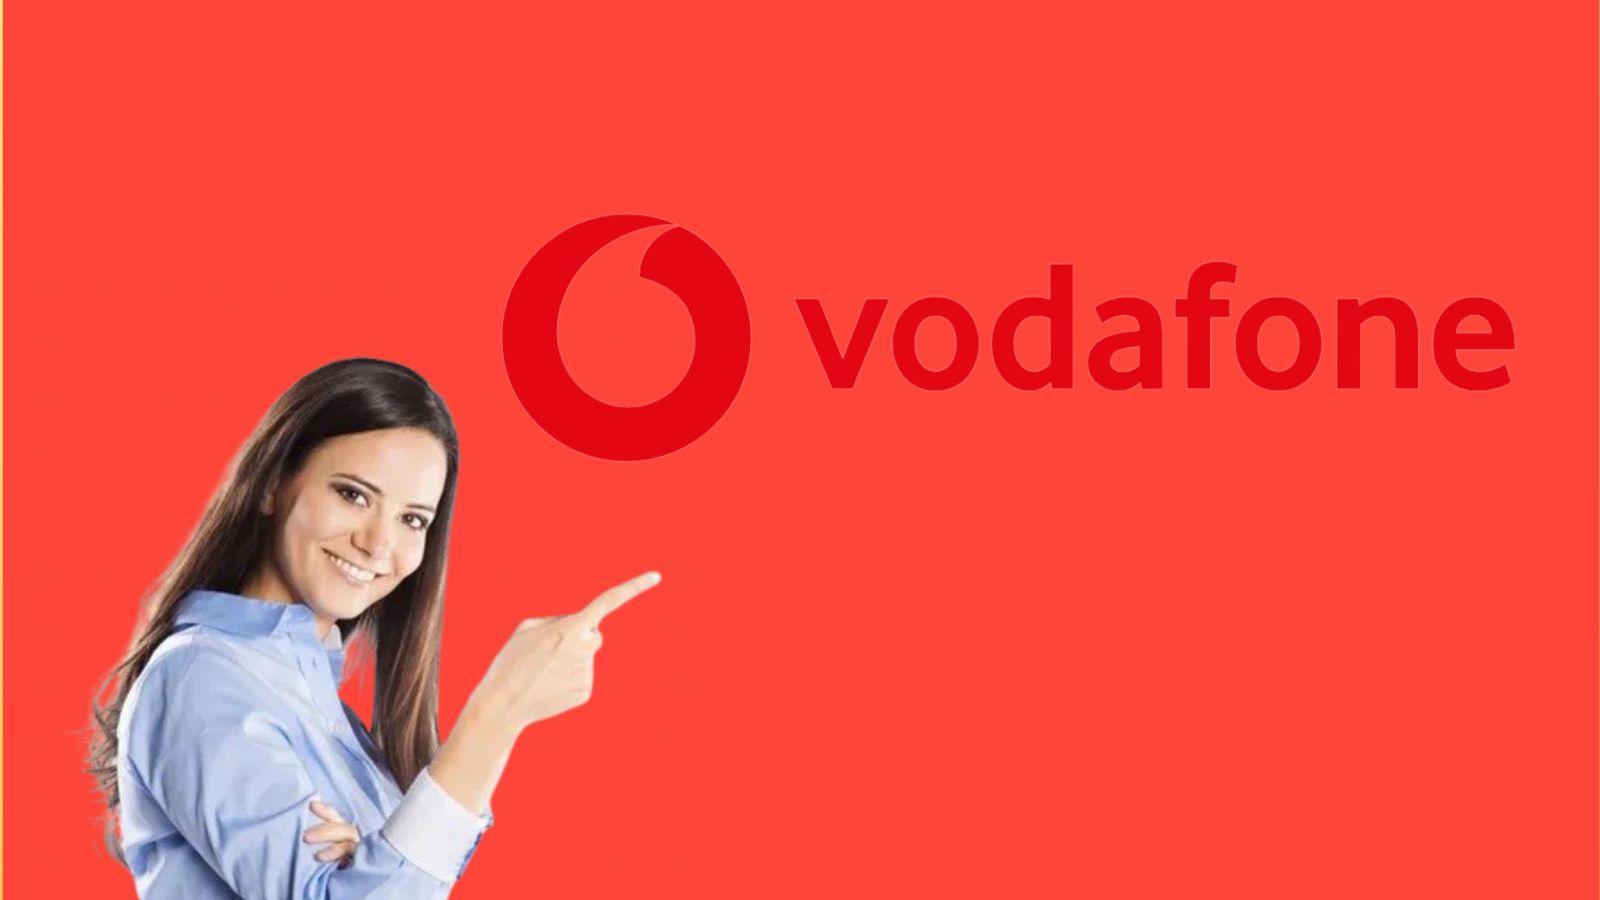 Vodafone offre promozioni da urlo a partire da 9,99 euro al mese